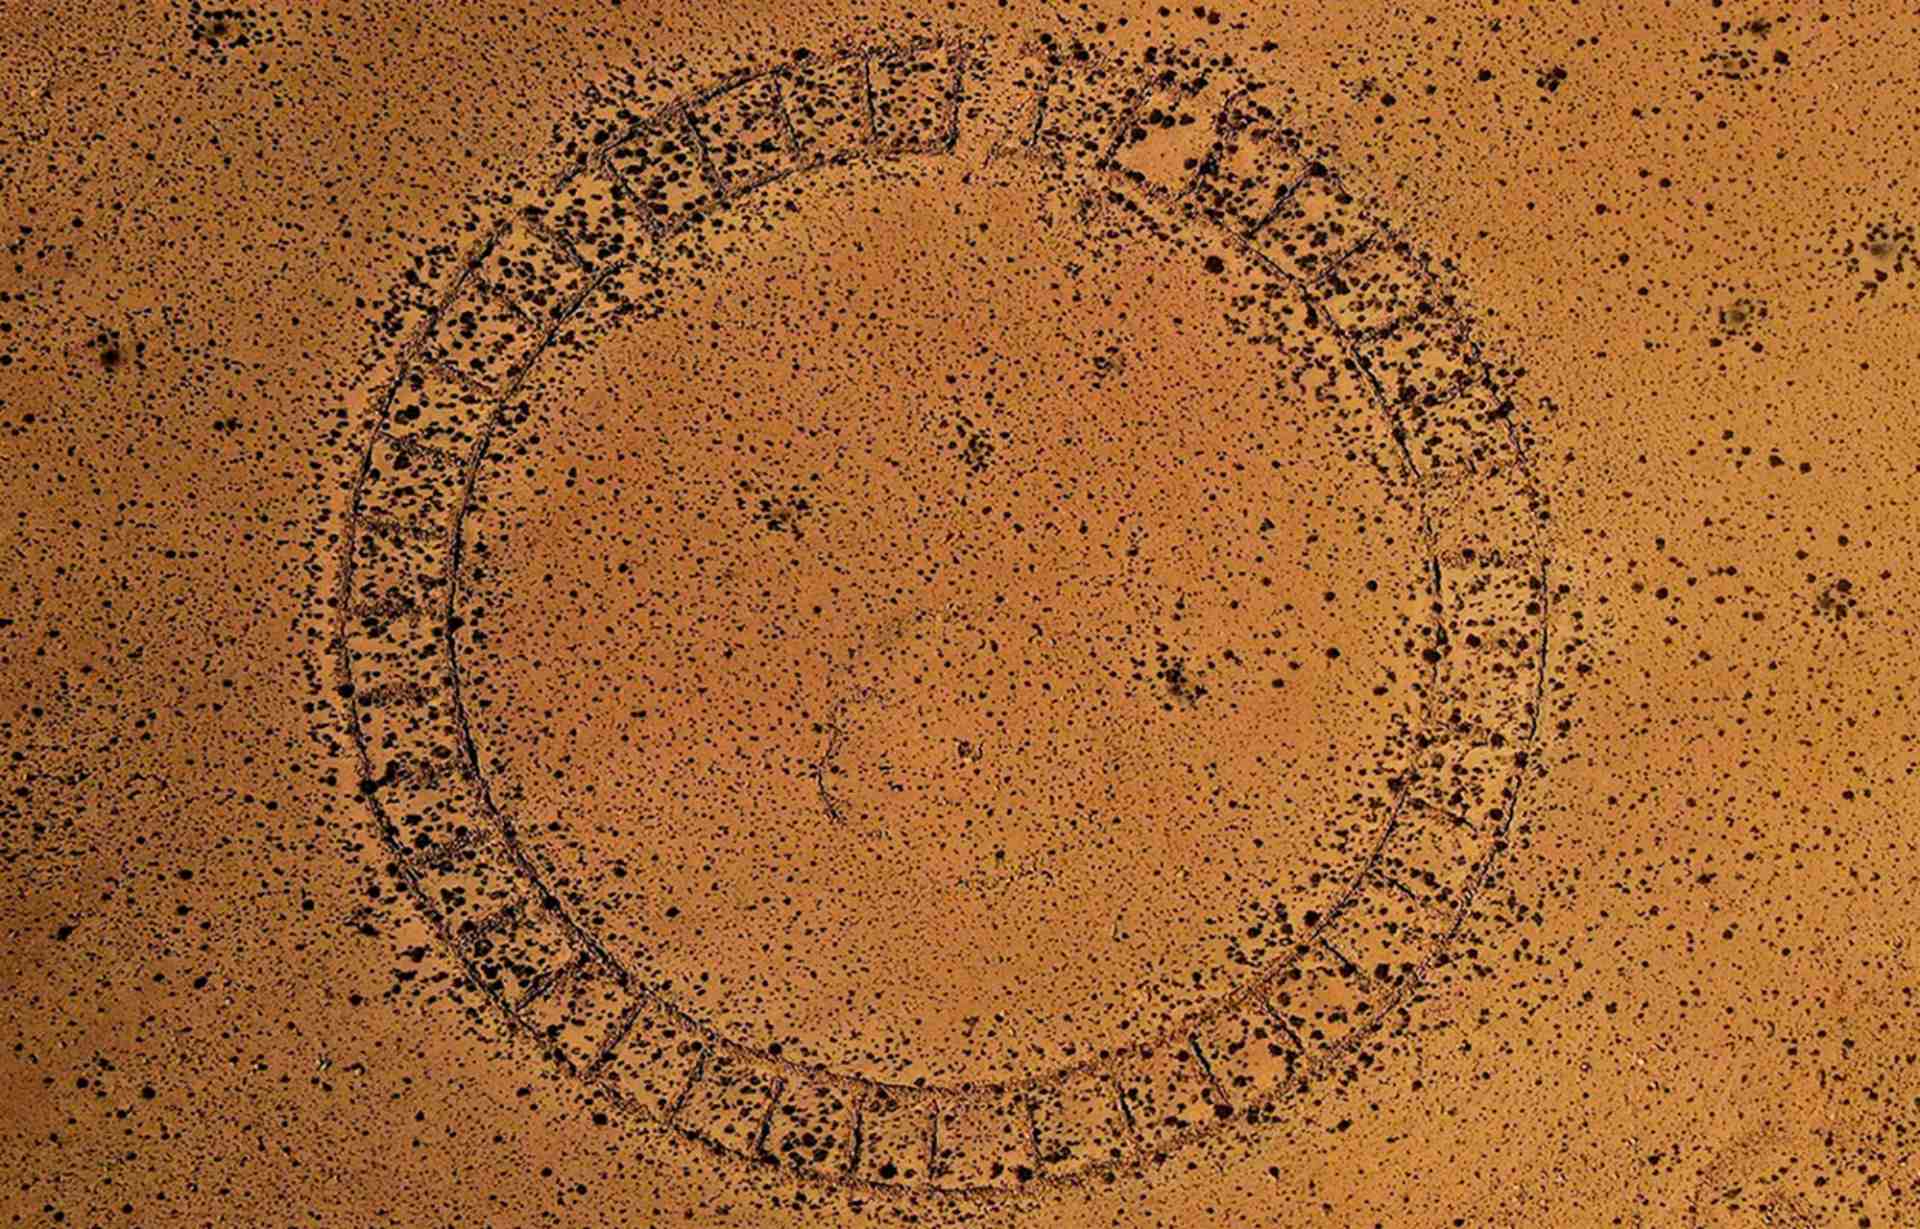 गोलाकार स्मारक वास्कीरी, बोलीविया में खोजा गया।